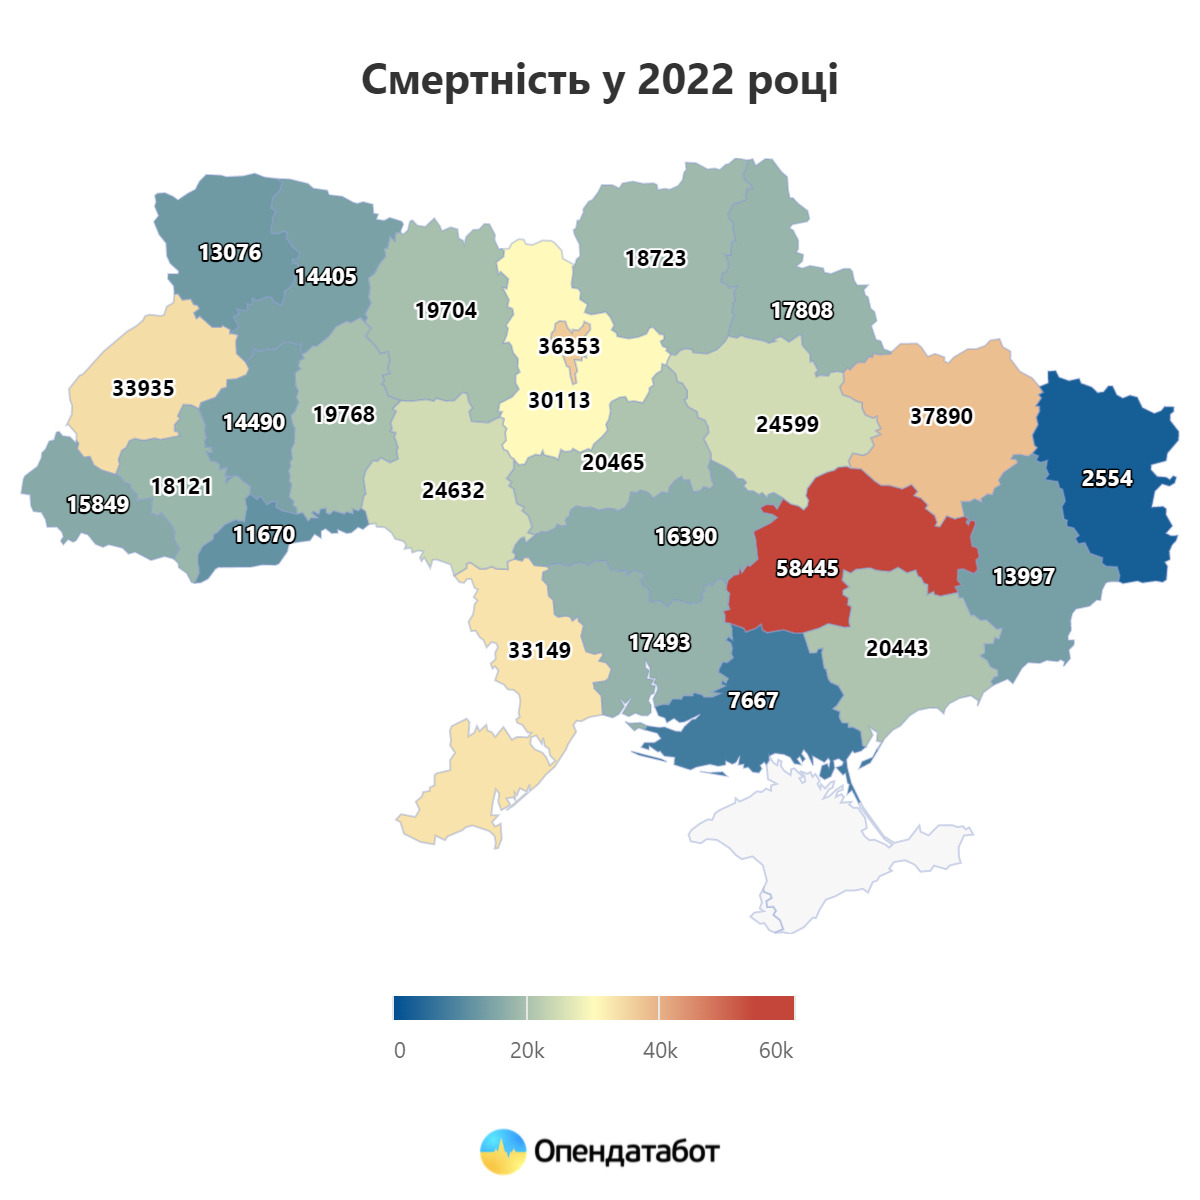 На 335 тысяч уменьшилось население Украины за 2022 год, - Опендатабот 02